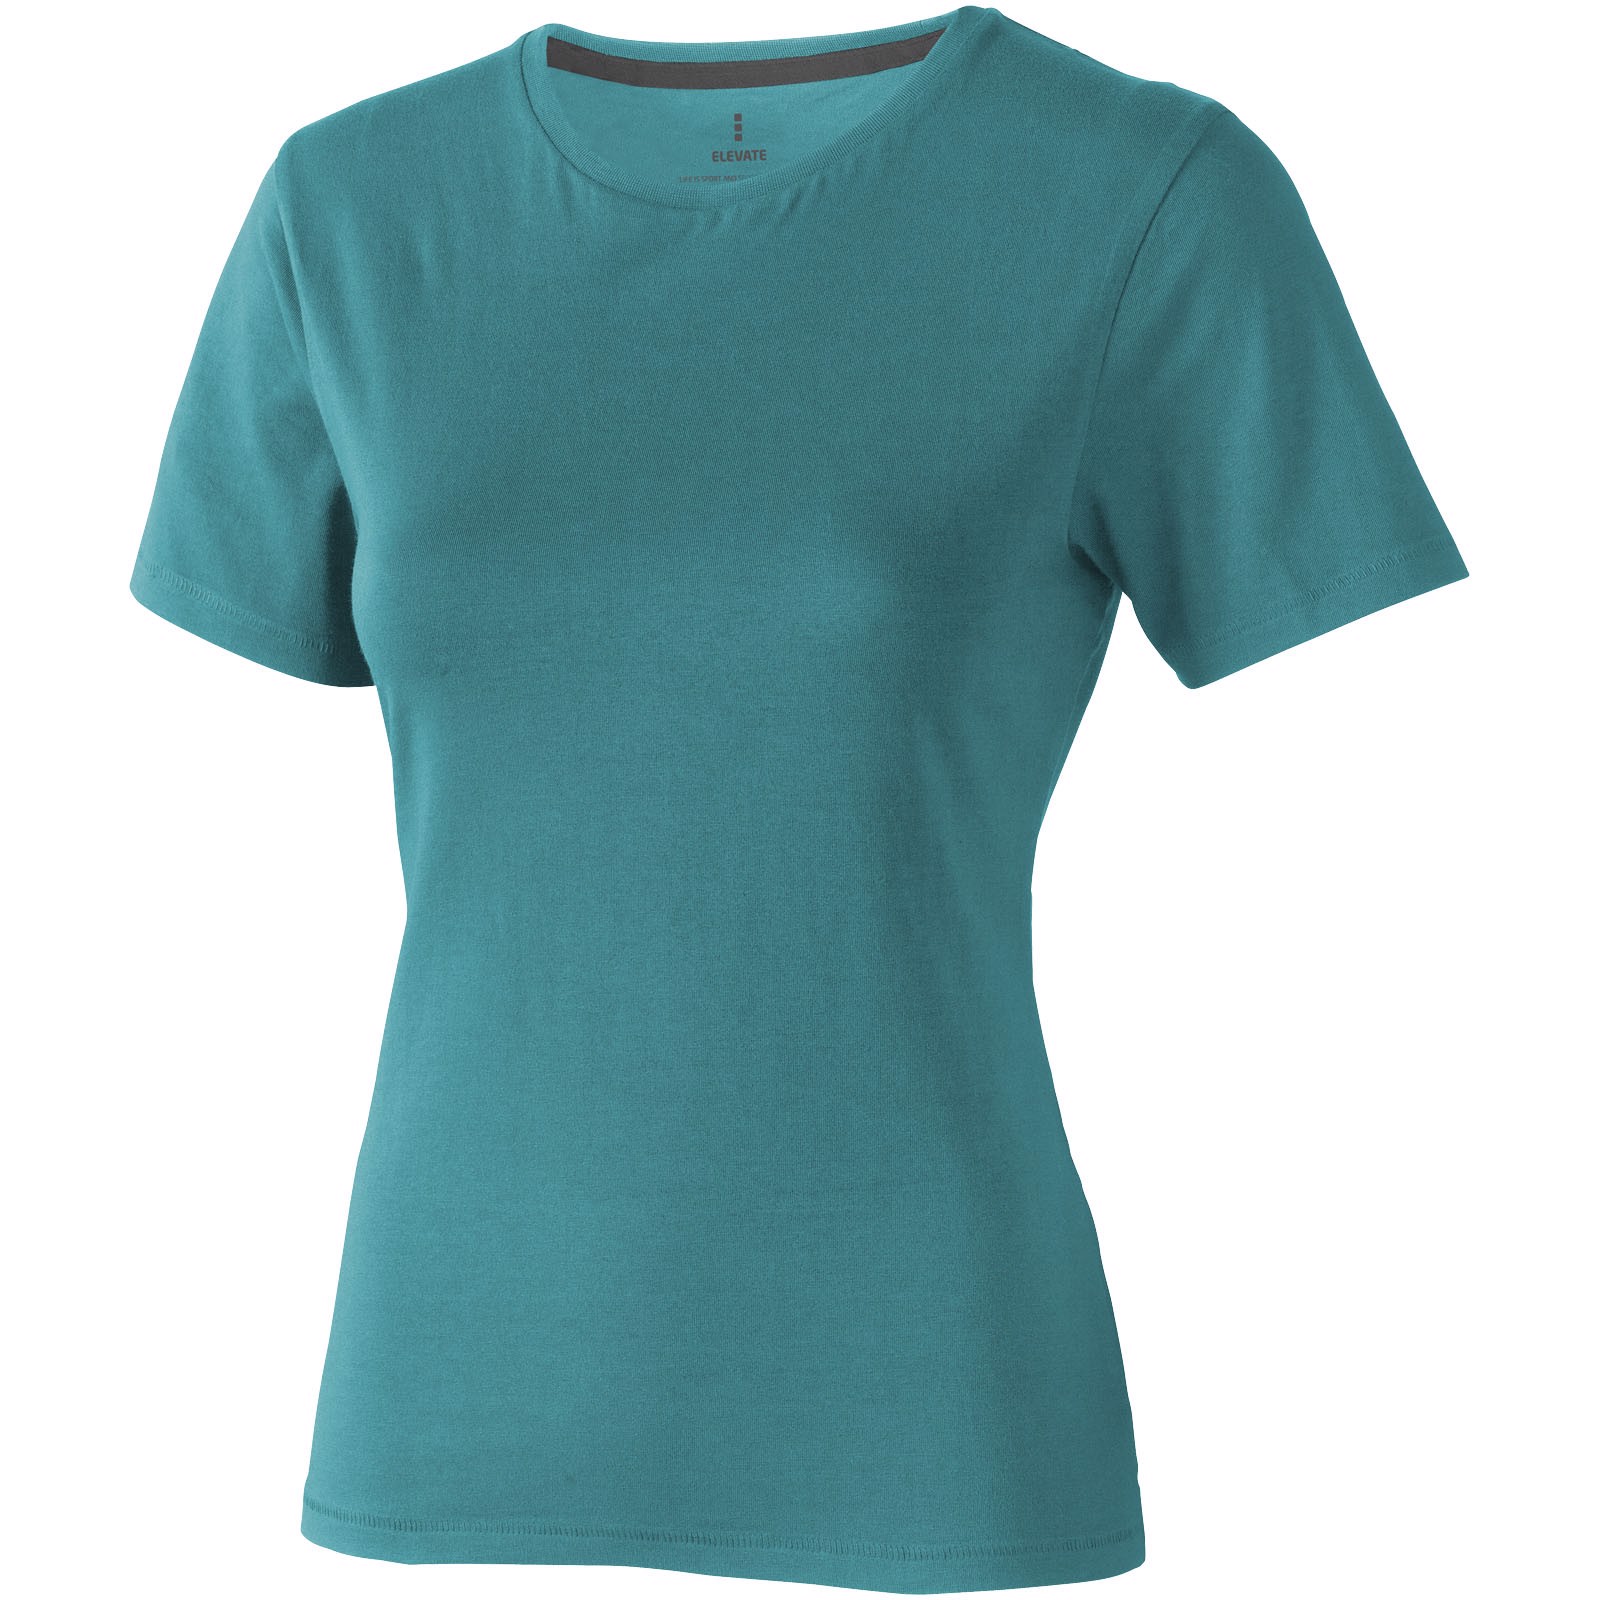 Nanaimo short sleeve women's T-shirt - Aqua / S